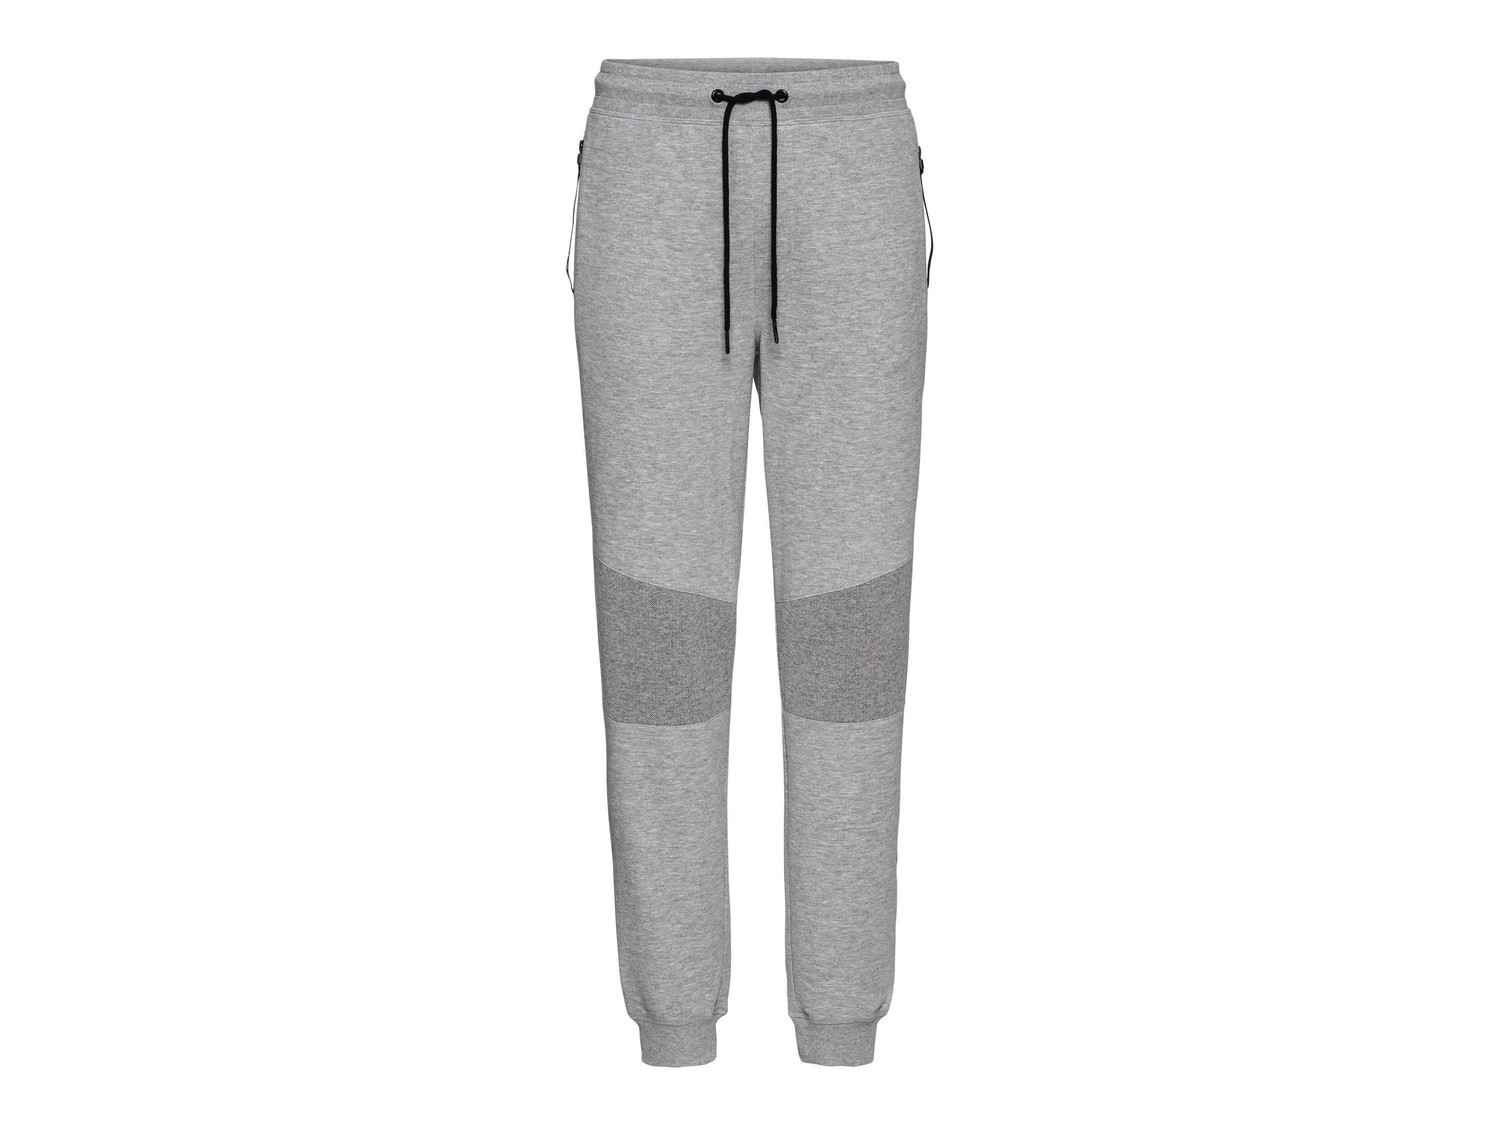 Pantaloni sportivi Livergy, prezzo 9.99 &#8364;  
Misure: S-XL
- Oeko tex NEW